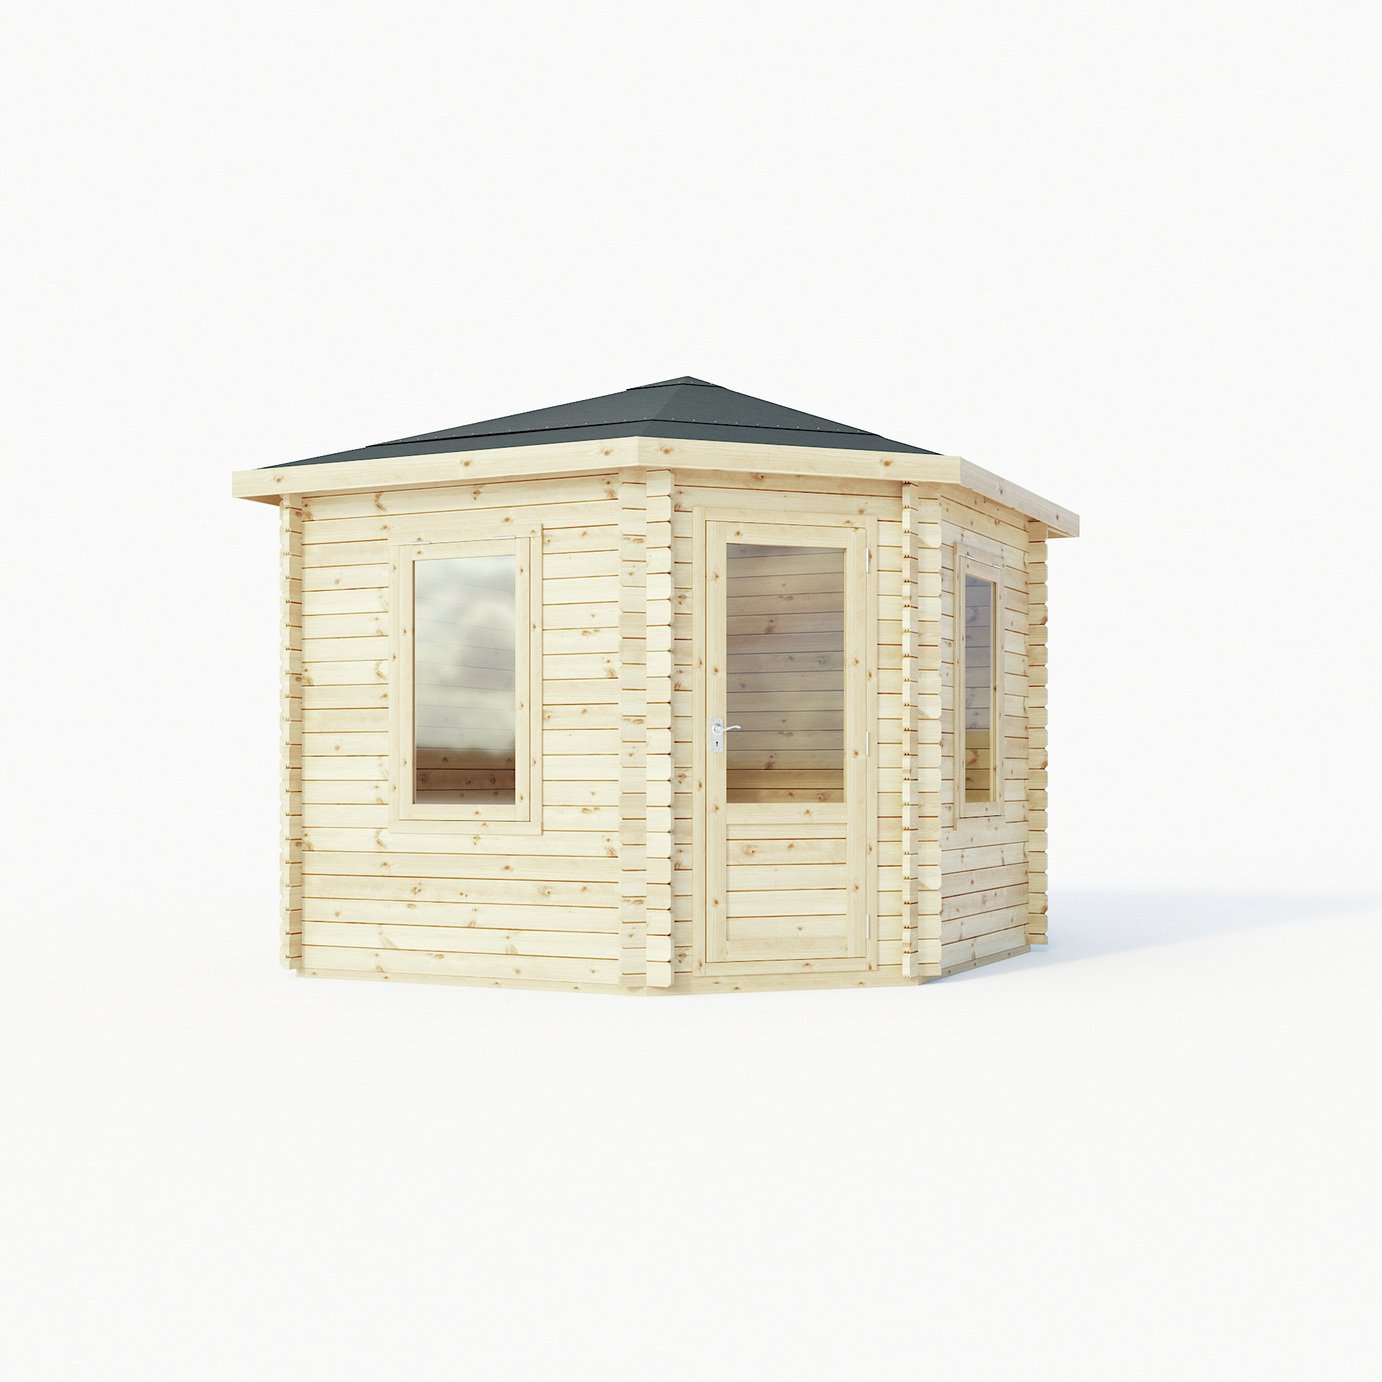 Mercia Wooden 15 x 12ft Single Glazed Corner Log Cabin review